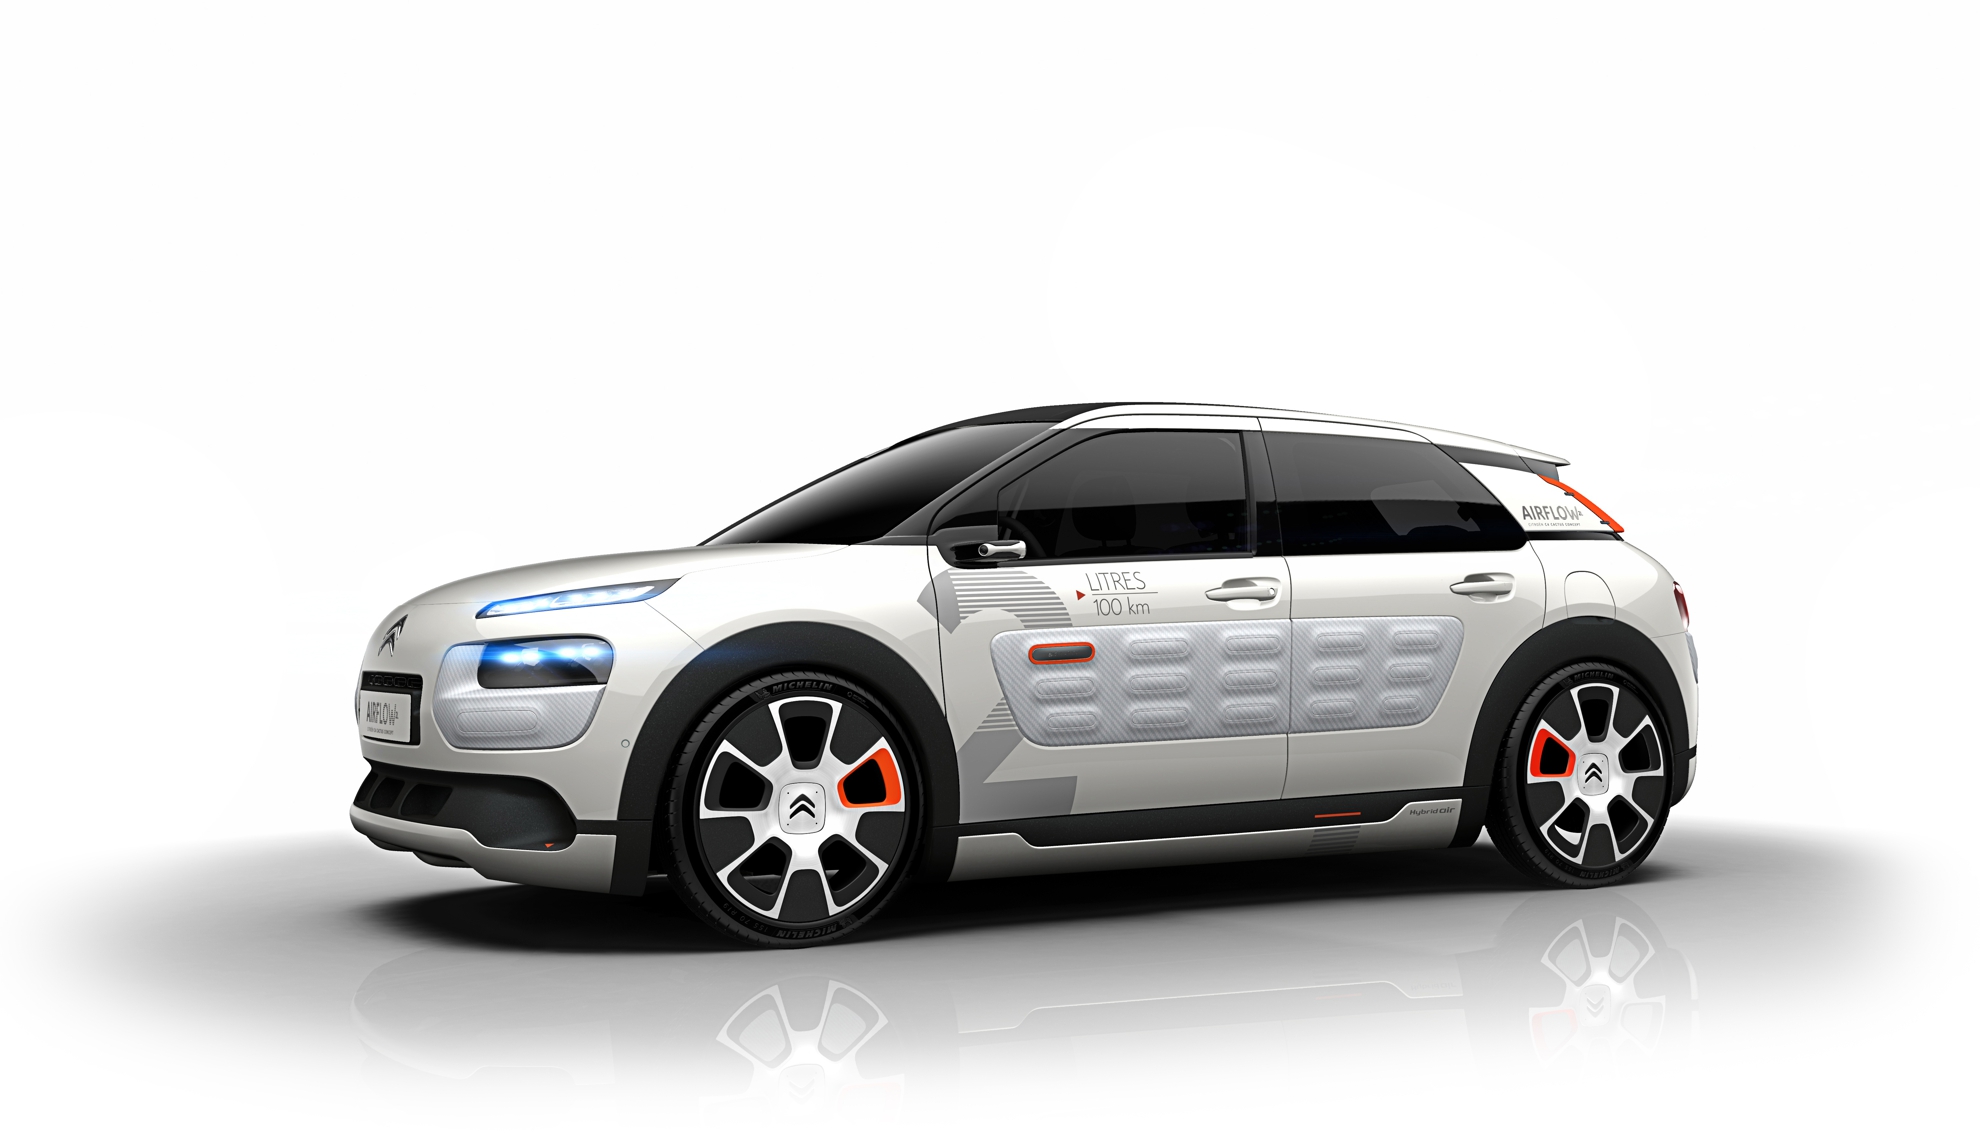 Paris Motor Show 2014 – Citroen Cactus C4 Concept Car